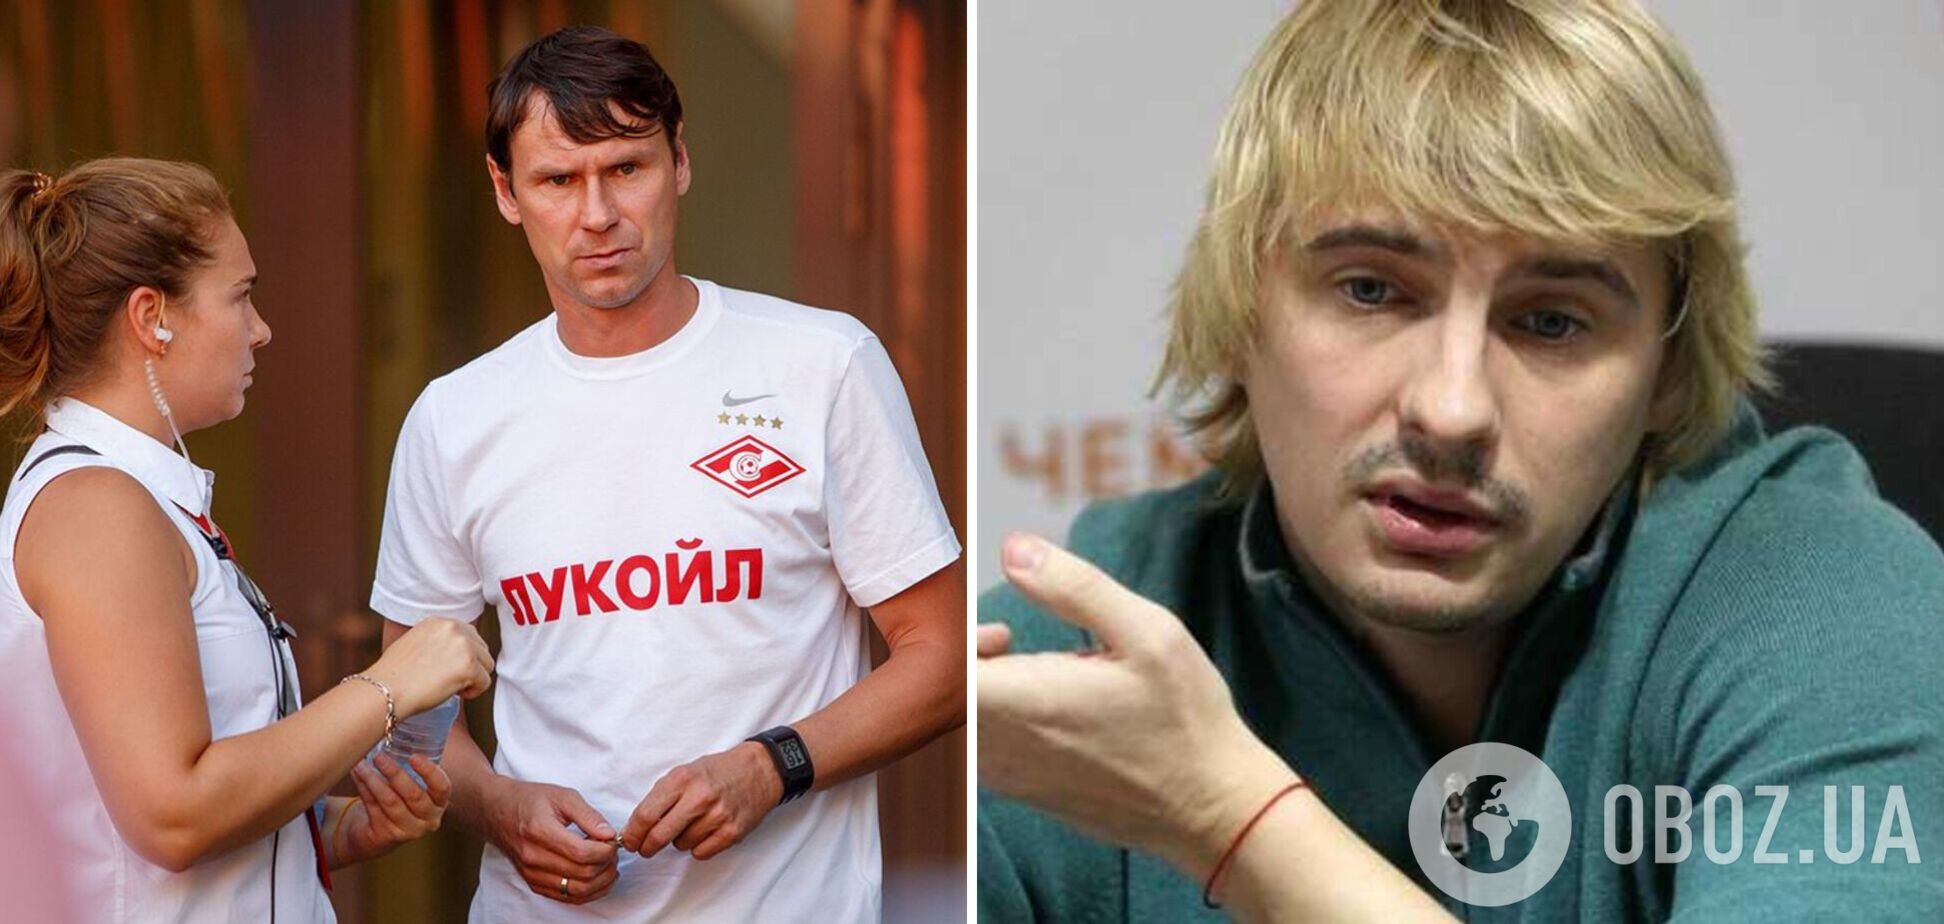 Легендарный футболист сборной России заявил, что стесняется писать украинцам из-за войны